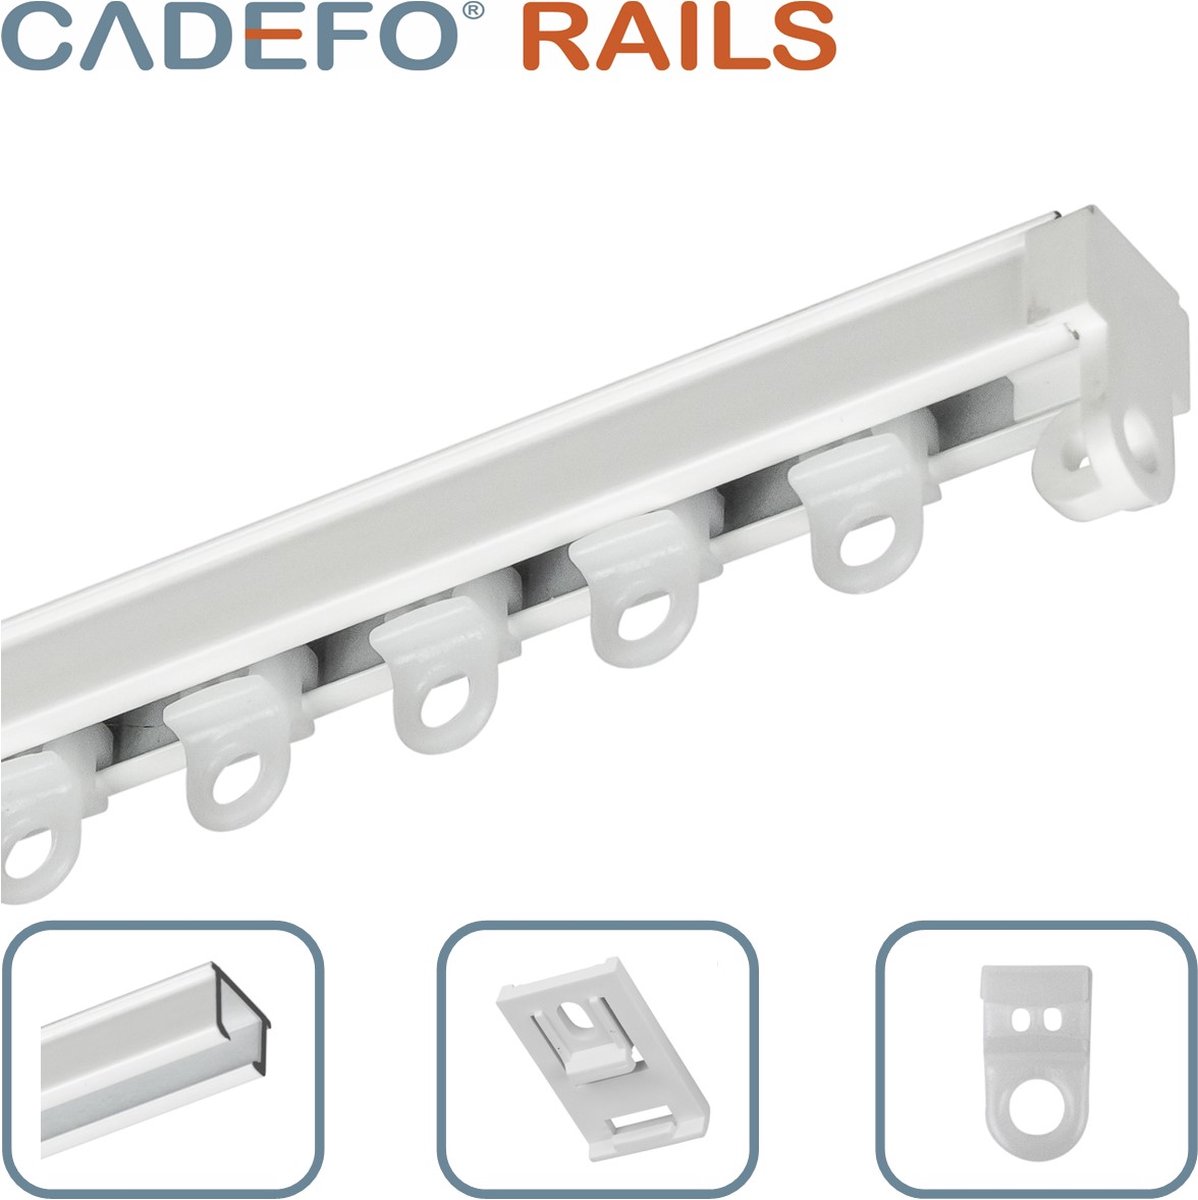 CADEFO RAILS (351 - 400 cm) Gordijnrails - Compleet op maat! - UIT 1 STUK - Leverbaar tot 6 meter - Plafondbevestiging - Lengte 371 cm